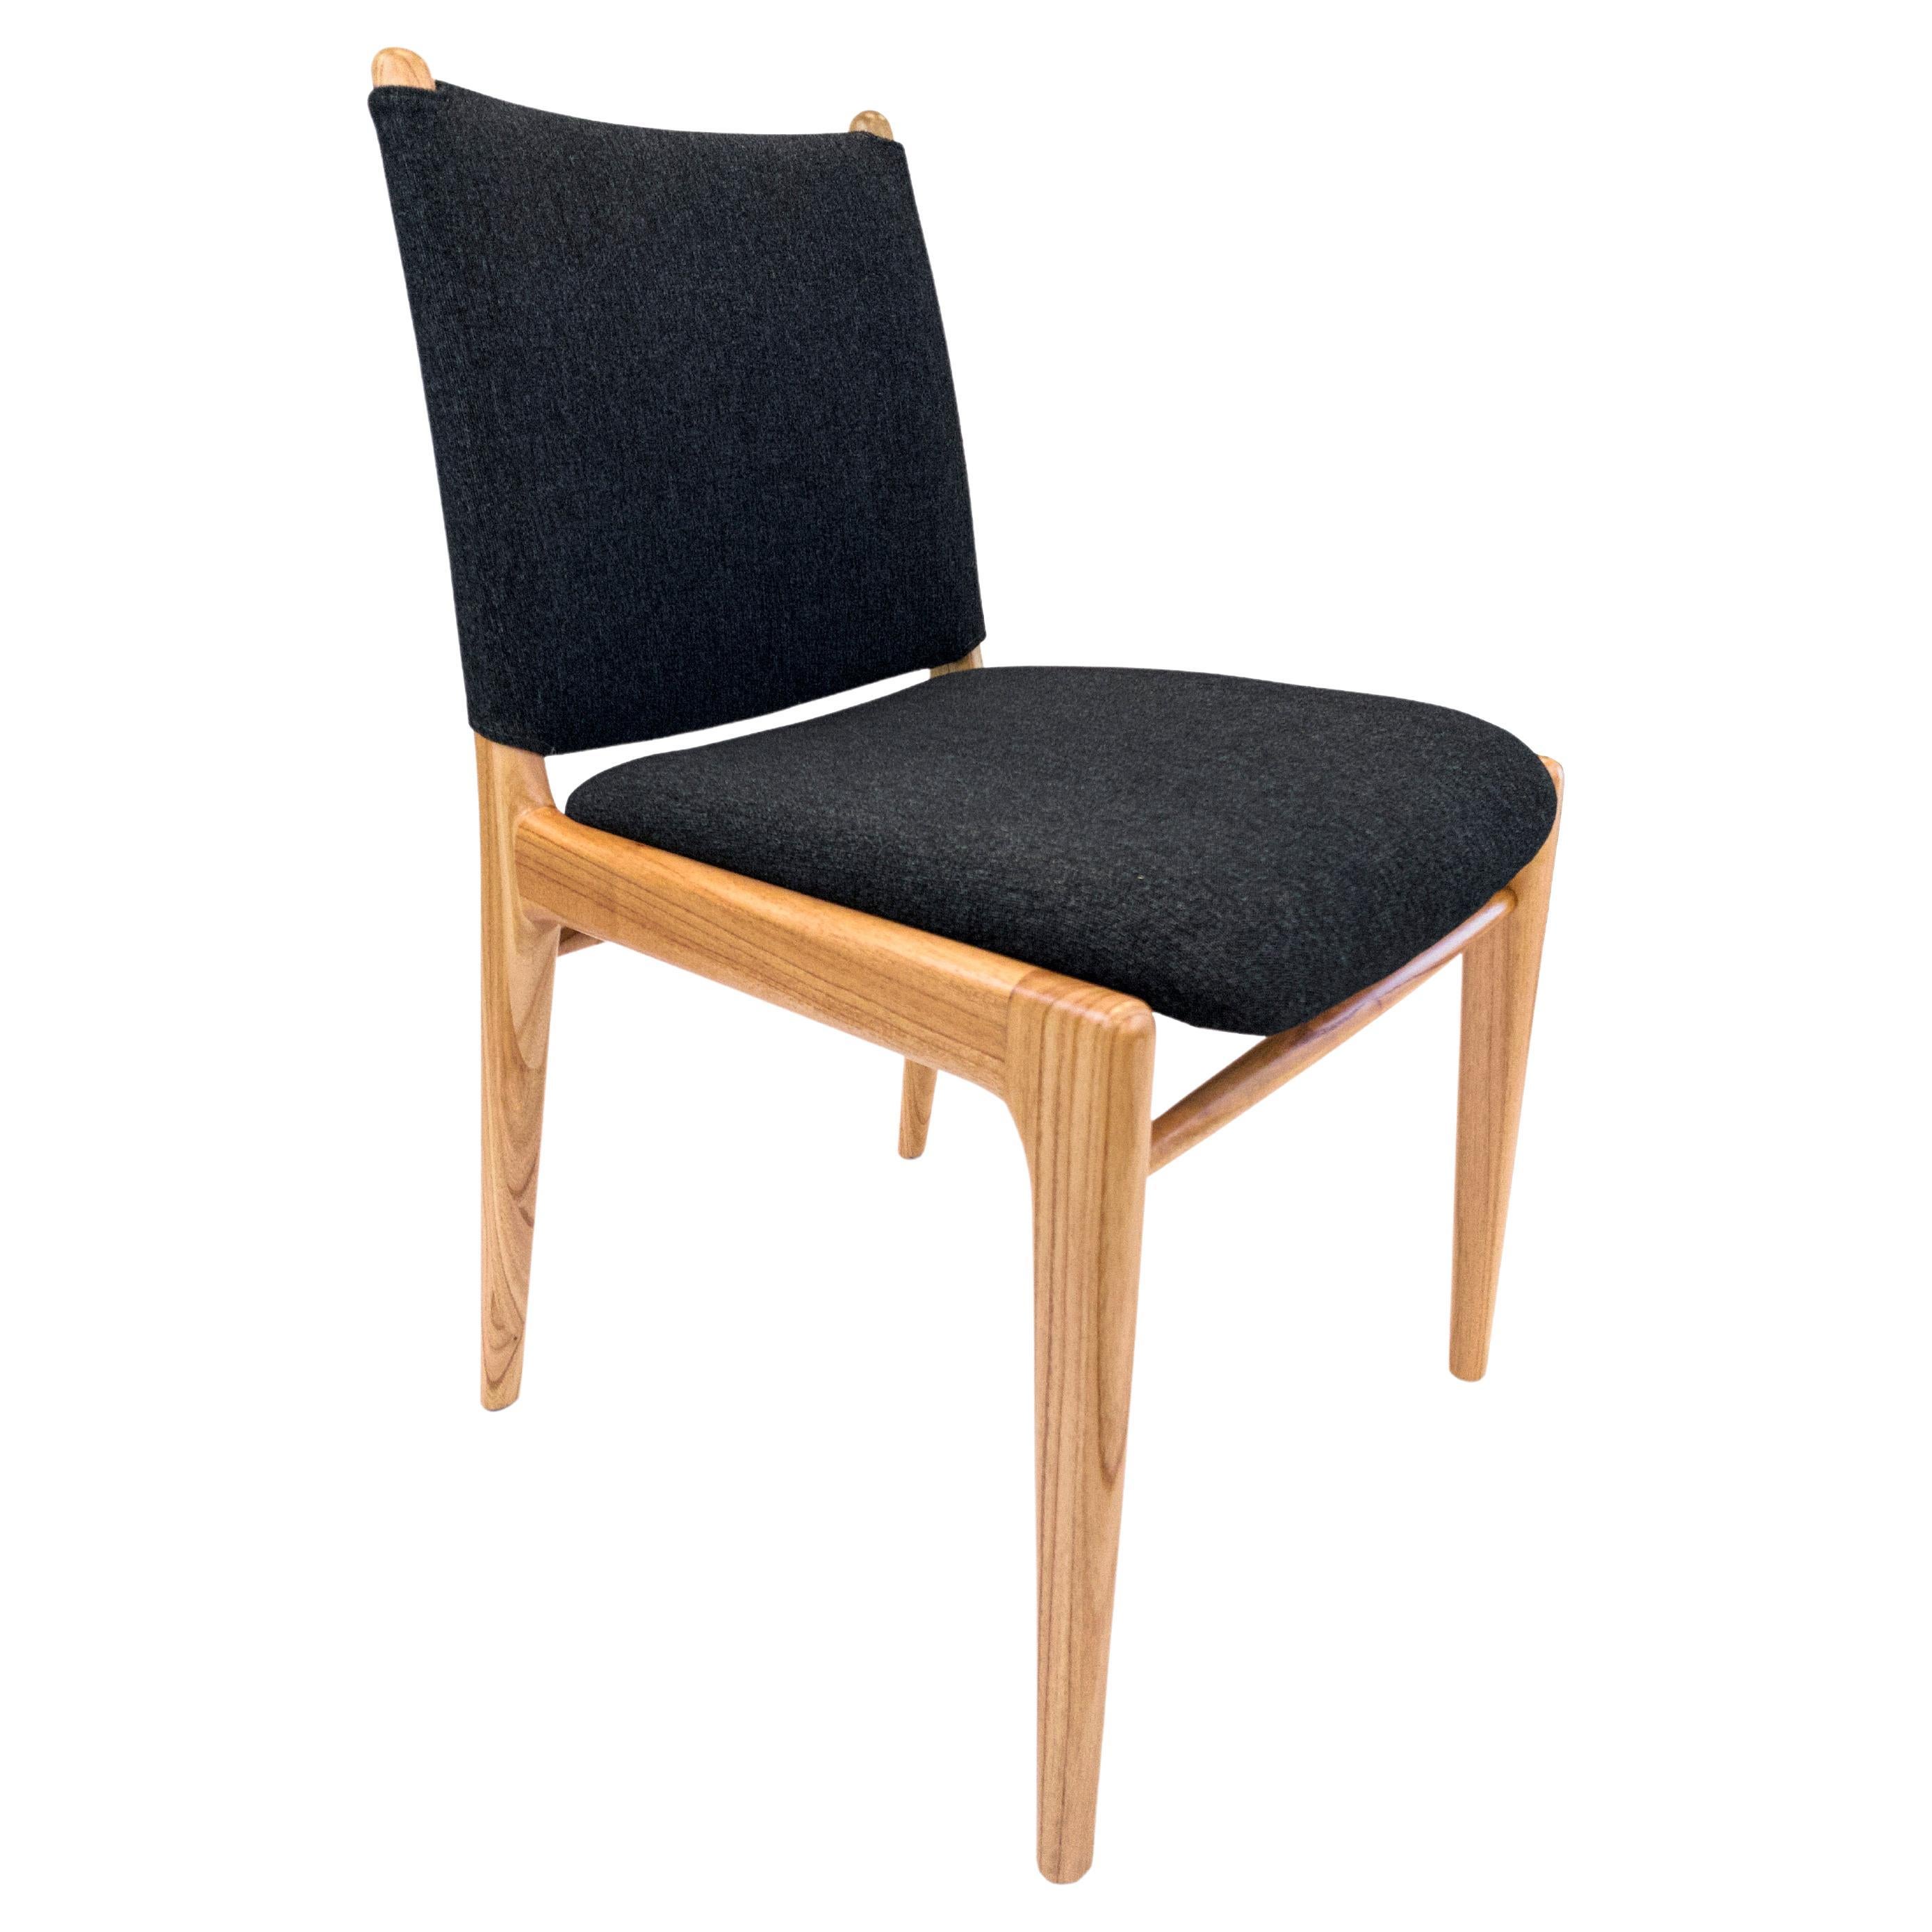 La chaise Cappio met en valeur notre magnifique finition en bois de chinaberry combinée à un superbe tissu noir. Cette chaise présente un design unique de boucles sur le dossier de l'assise. Notre équipe chez Uultis a conçu ce design simple mais